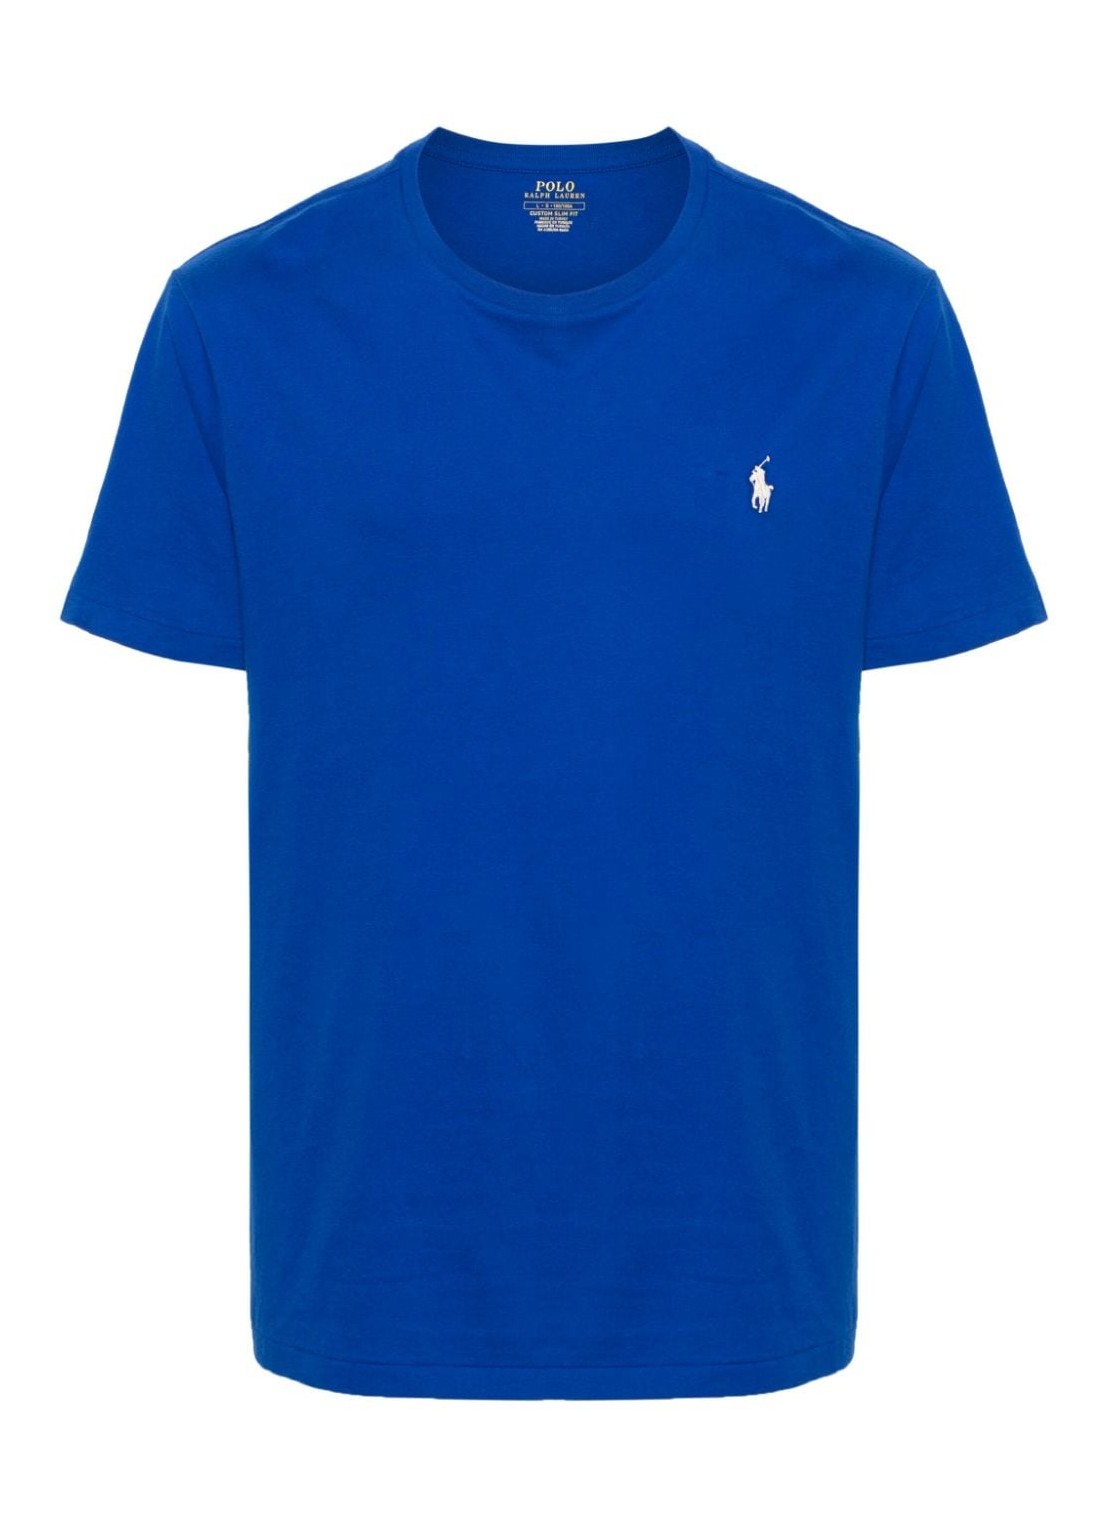 Camiseta polo ralph lauren t-shirt man sscncmslm2-short sleeve-t-shirt 710671438347 sapphire star c8